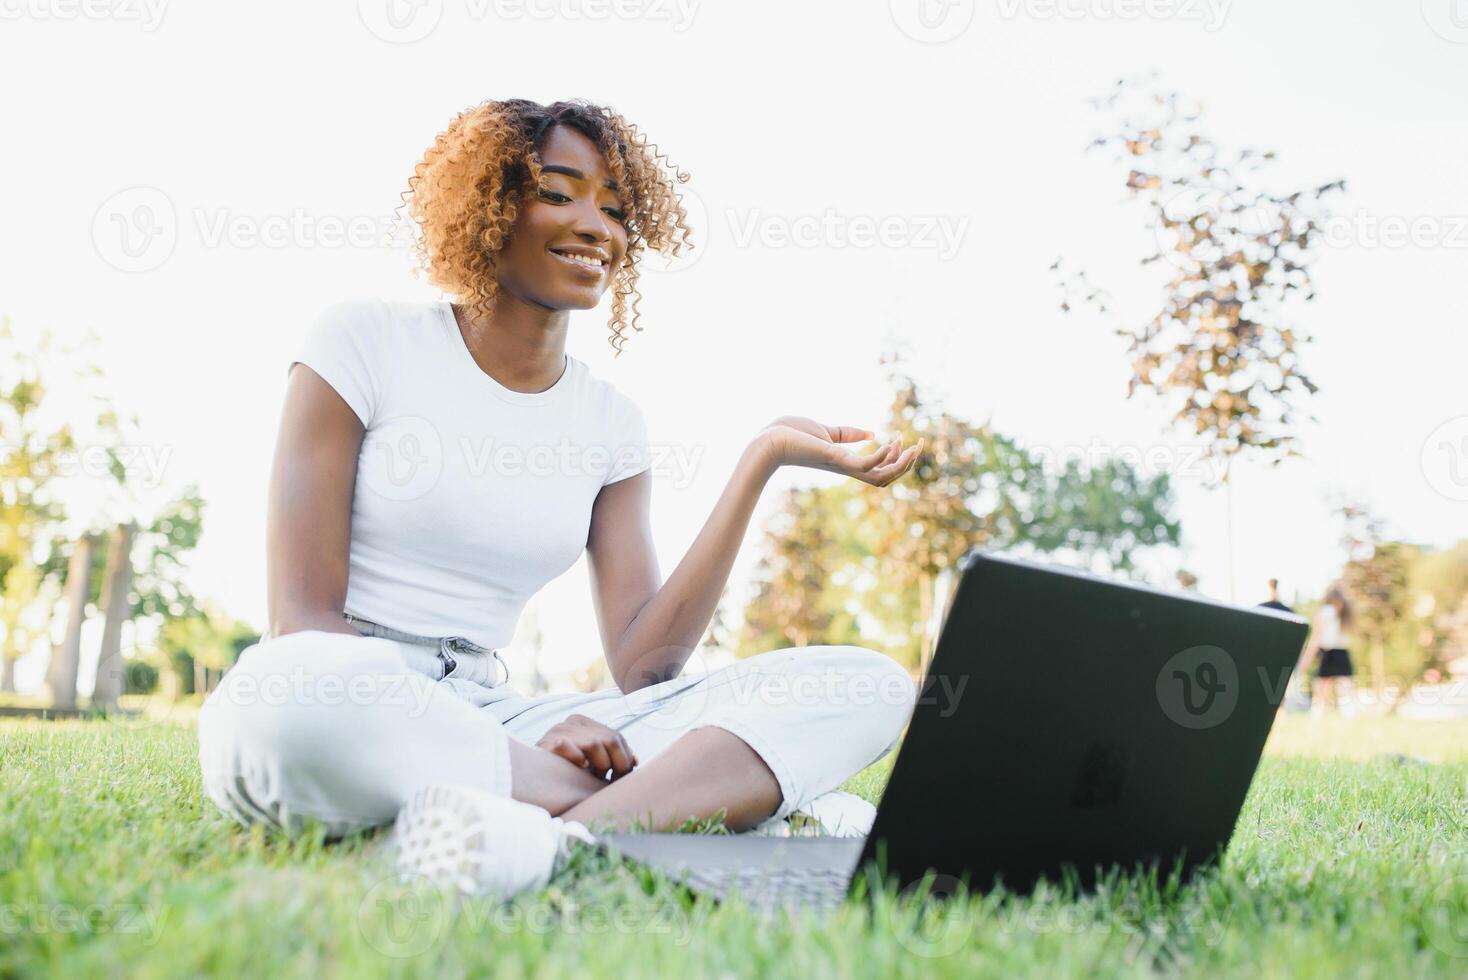 jovem sorridente Preto mulher sentado ao ar livre em Relva com computador portátil, digitando, surfar Internet. tecnologia, comunicação, Educação e controlo remoto trabalhando conceito, cópia de espaço foto